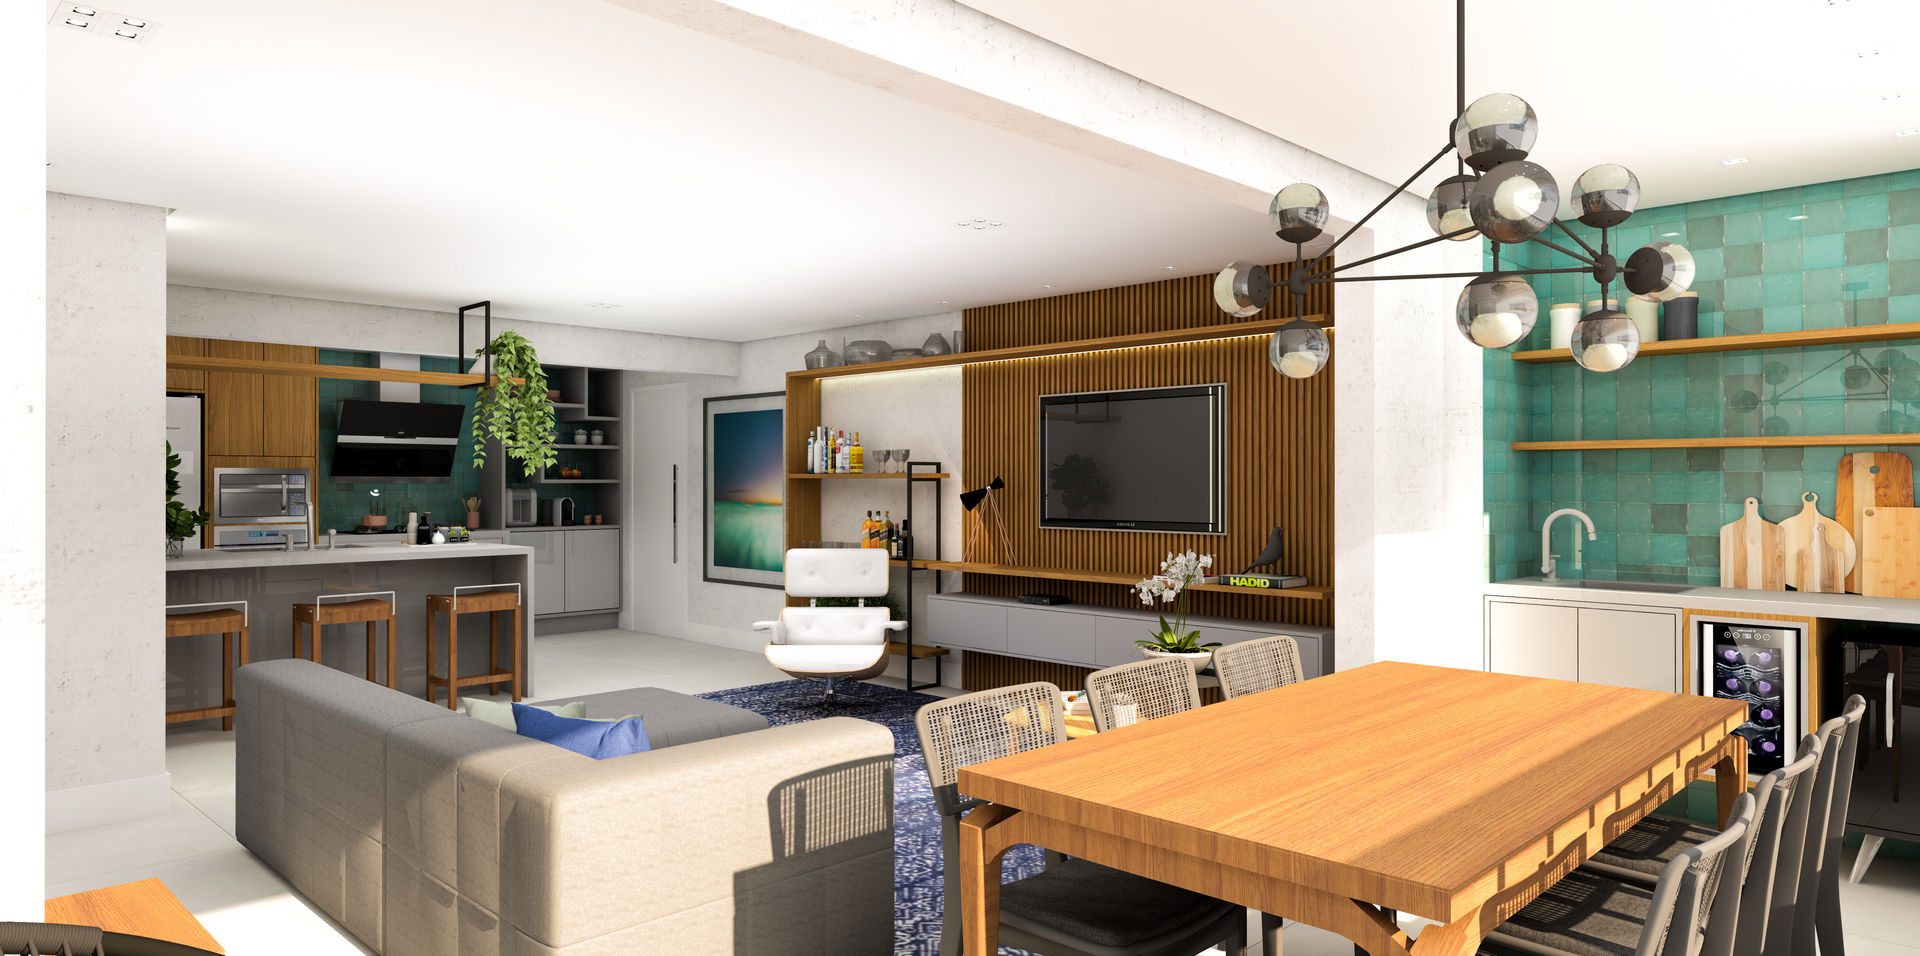 Integração Total - Varanda | Sala | Cozinha | Lavanderia, ArquitetureSe - Projetos de Arquitetura e Interiores à distância ArquitetureSe - Projetos de Arquitetura e Interiores à distância Living room Wood Wood effect